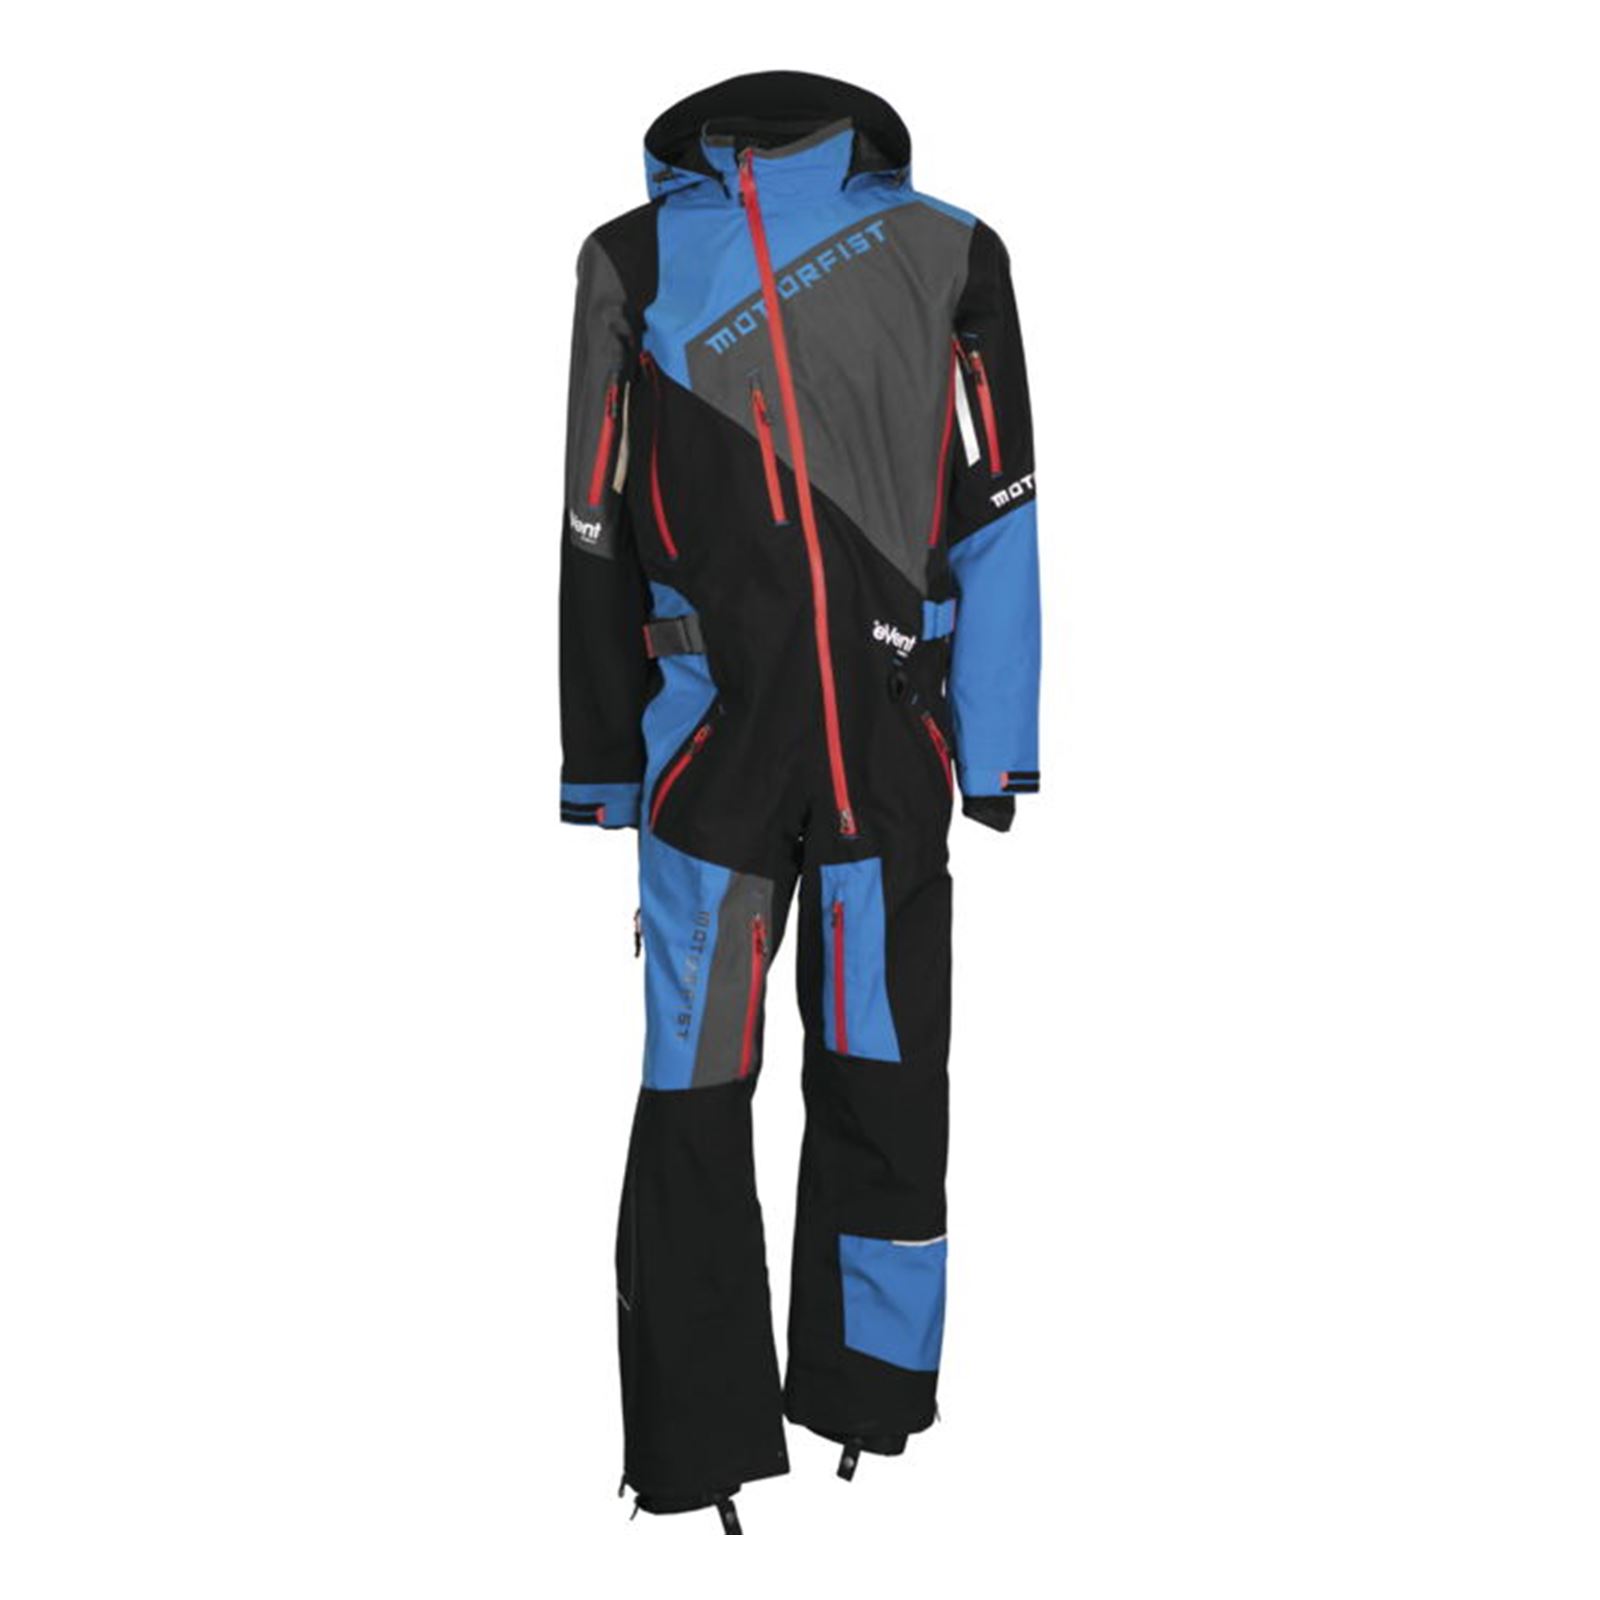 Motorfist Blitz II Suit - Black/Blue - Medium Tall